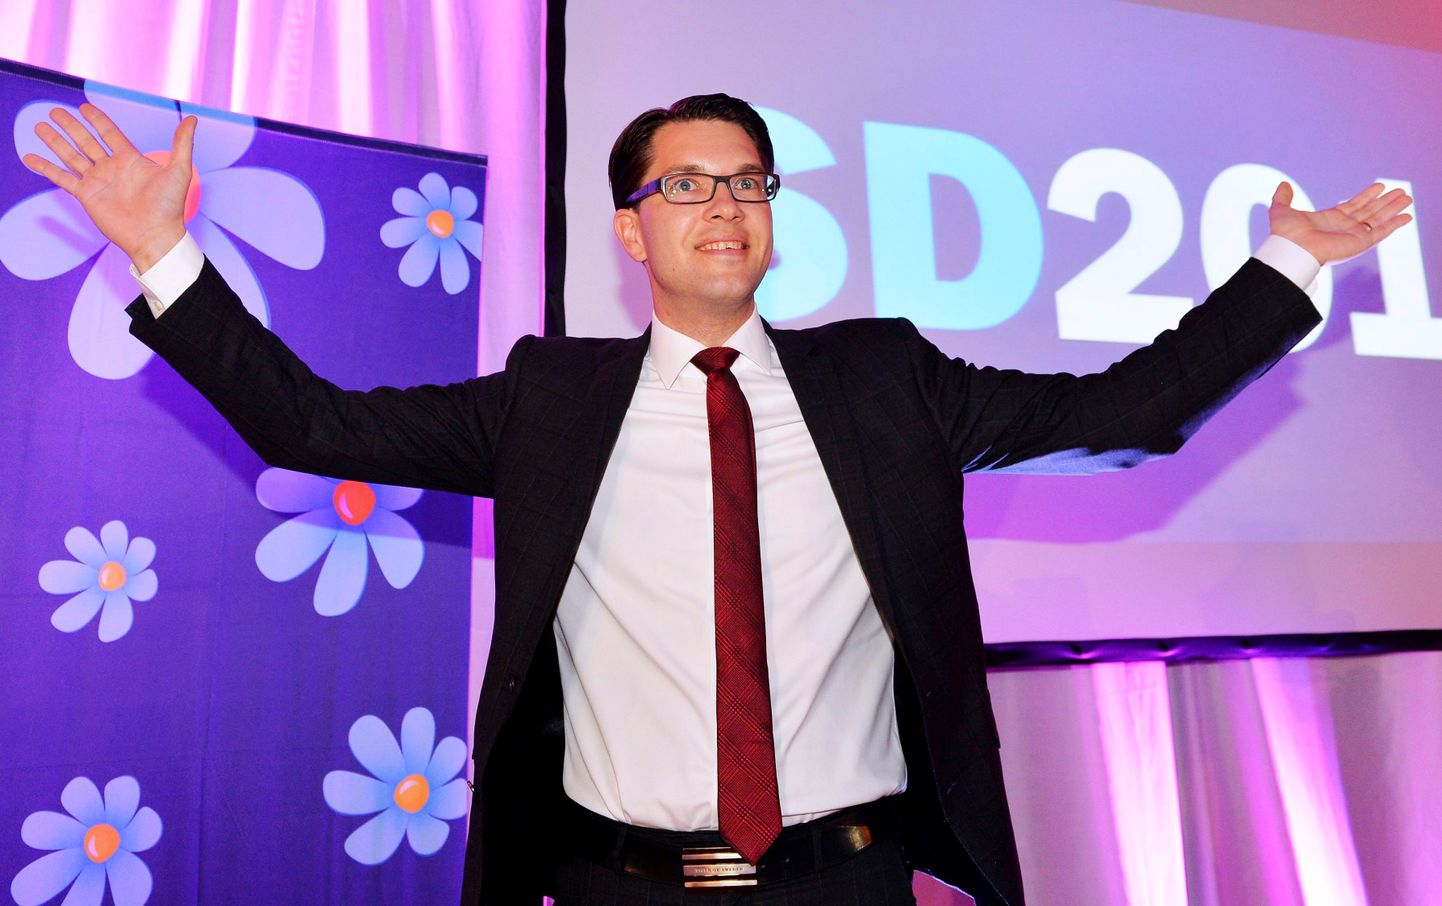 Rootsi Demokraatide liider Jimmie Åkesson tähistamas partei head tulemust 2014. aasta valimistel.